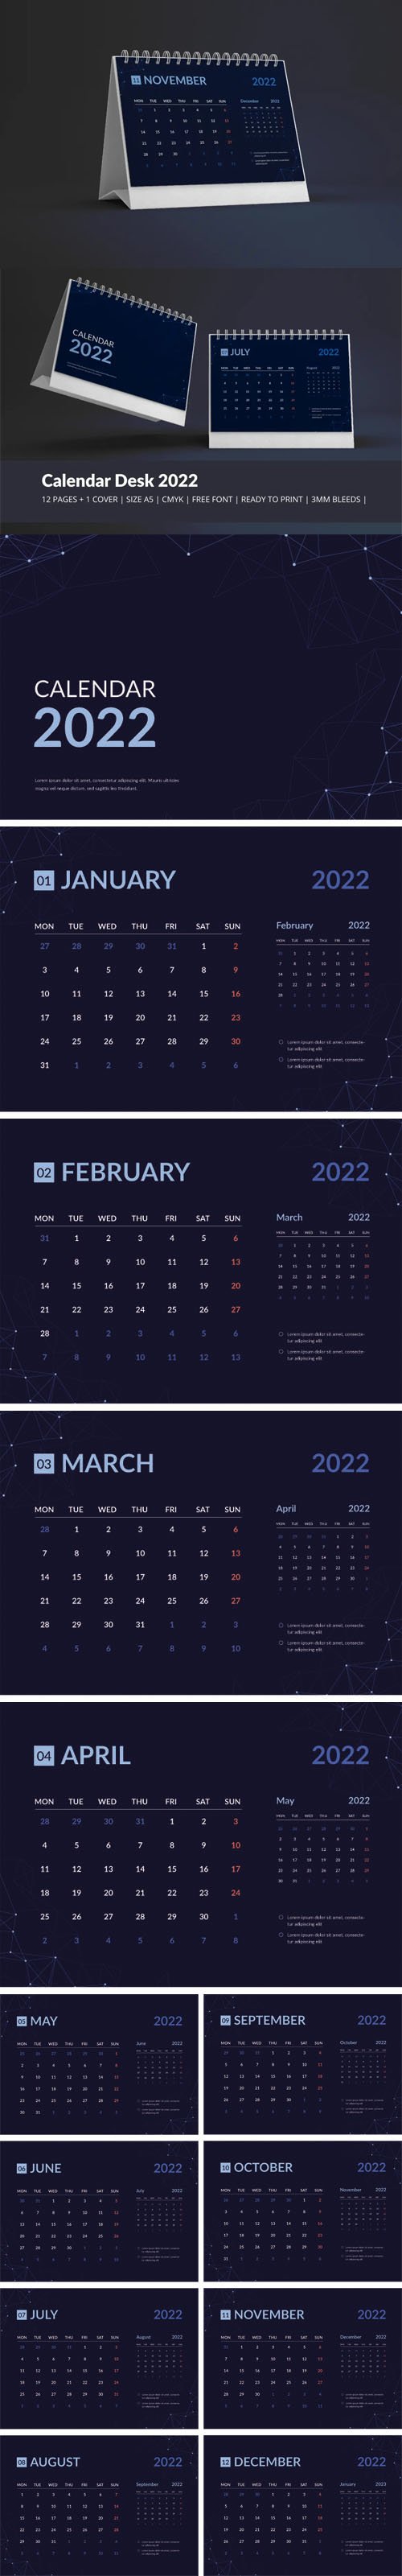 Galaxy Calendar Desk 2022 Theme Vector Template